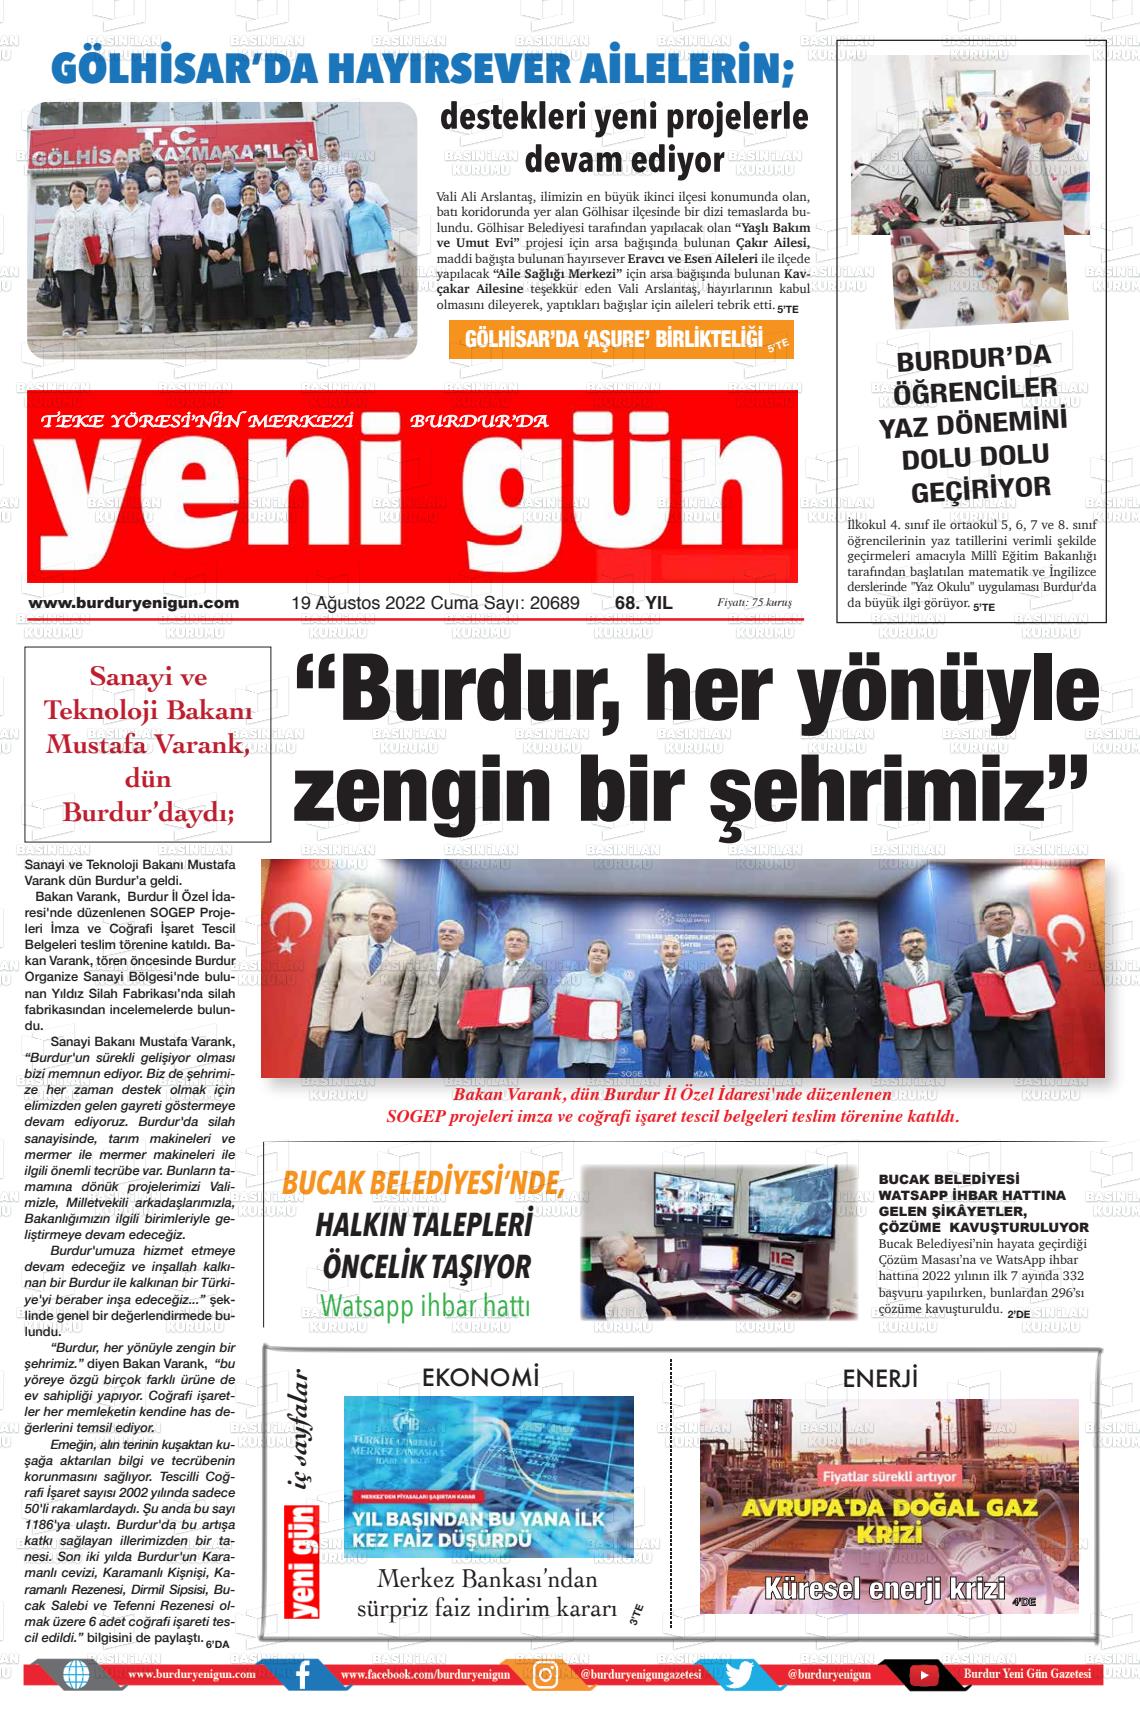 19 Ağustos 2022 Burdur Yeni Gün Gazete Manşeti